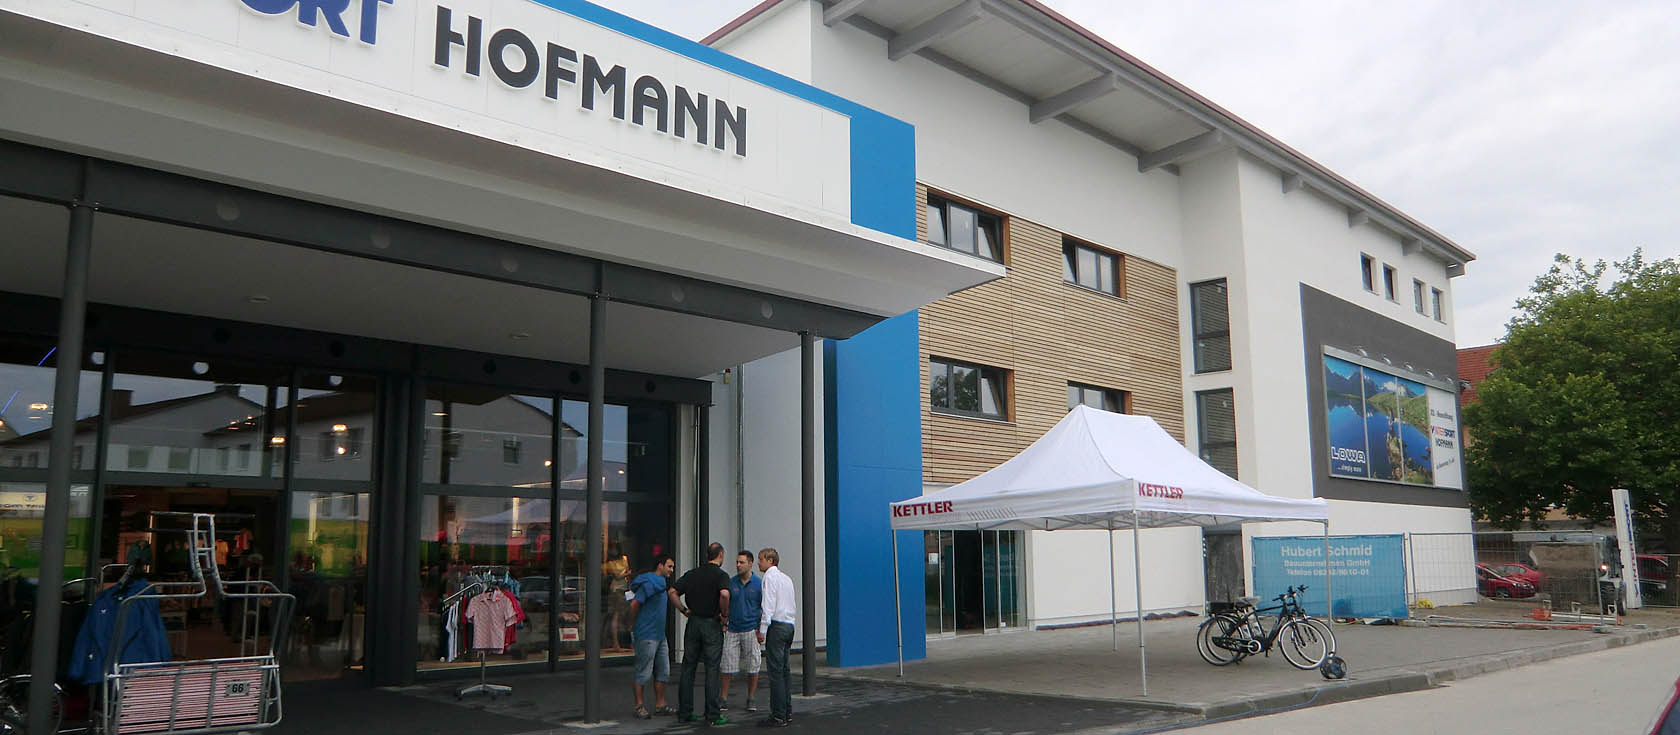 Erweiterung-Sanierung Intersport Hofmann